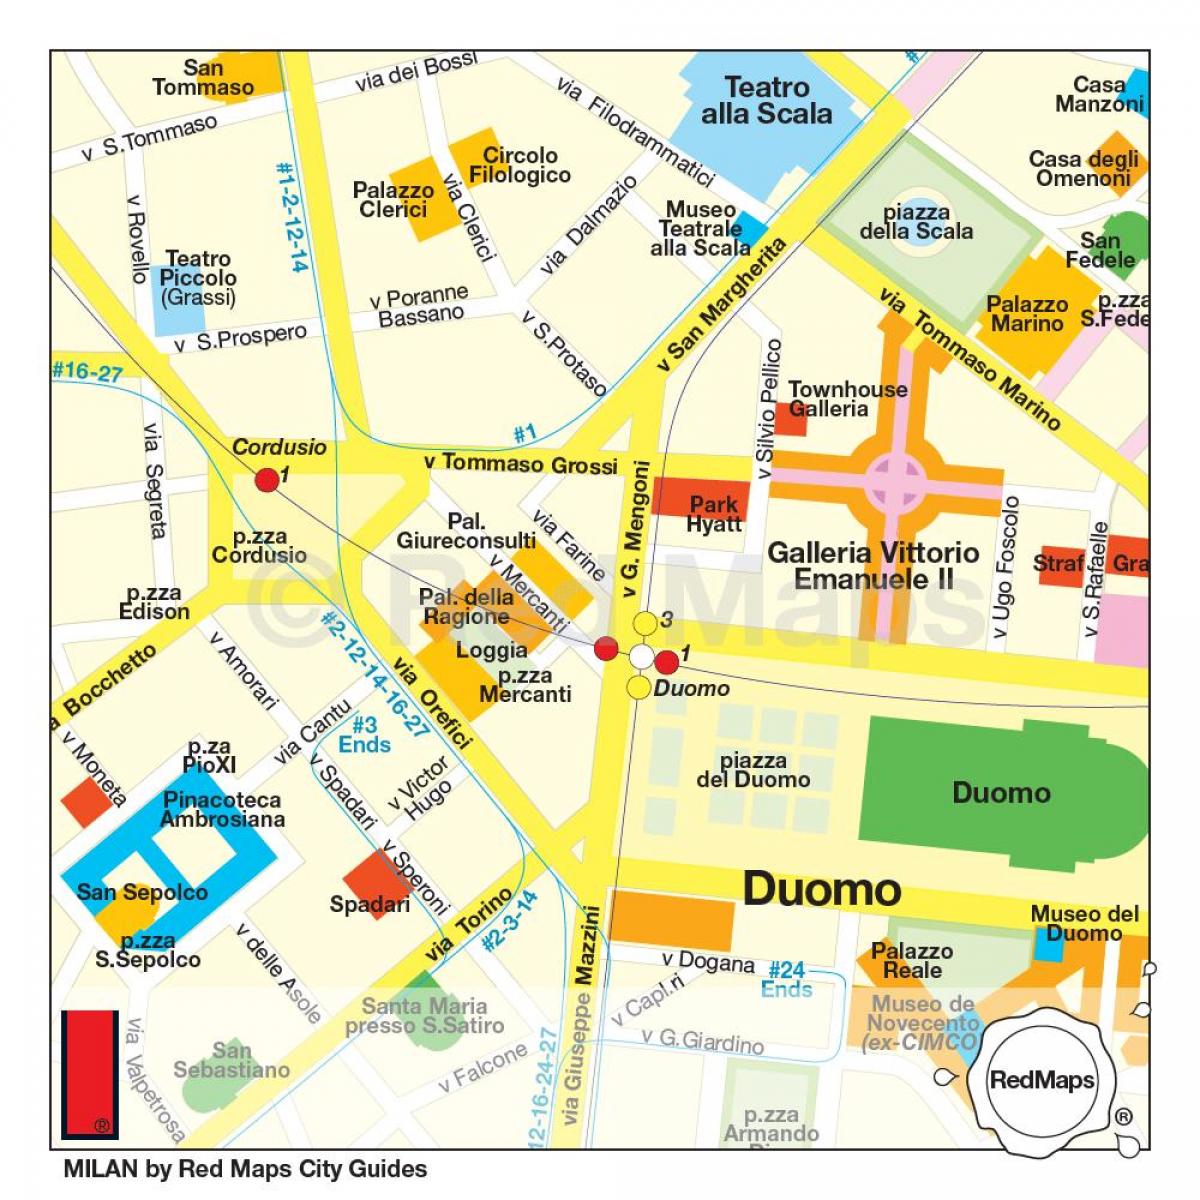 Sklepy w Mediolanie, mapa dzielnicy handlowej Mediolanu ...